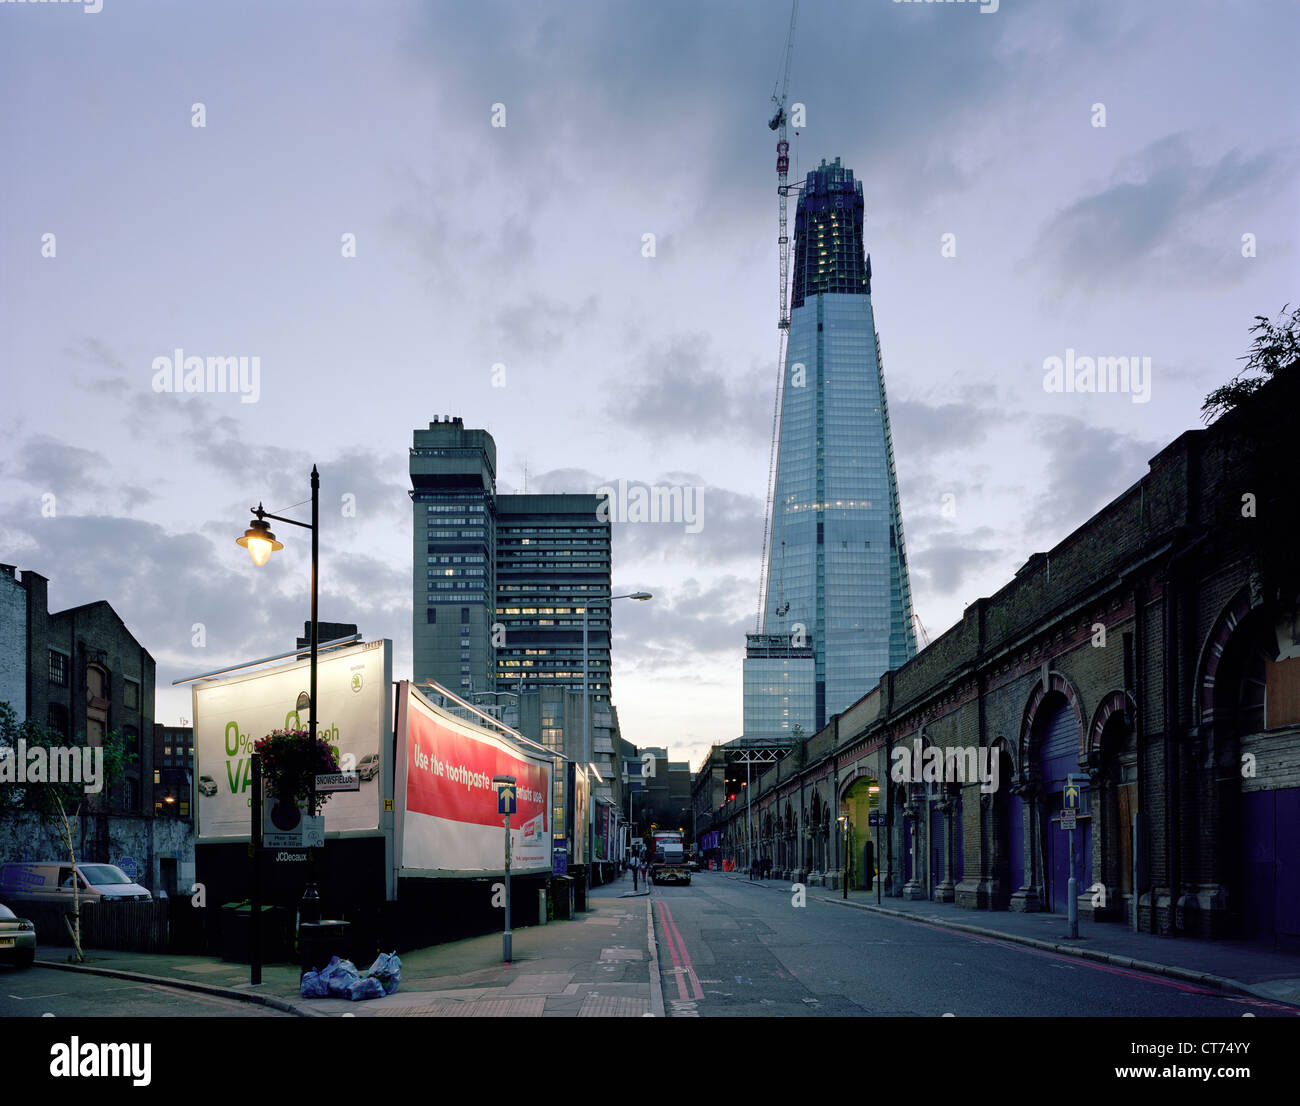 Shard, London, Vereinigtes Königreich. Architekt: Renzo Piano Building Workshop, 2012. Abenddämmerung Blick von St. Thomas Street (Ost). Stockfoto